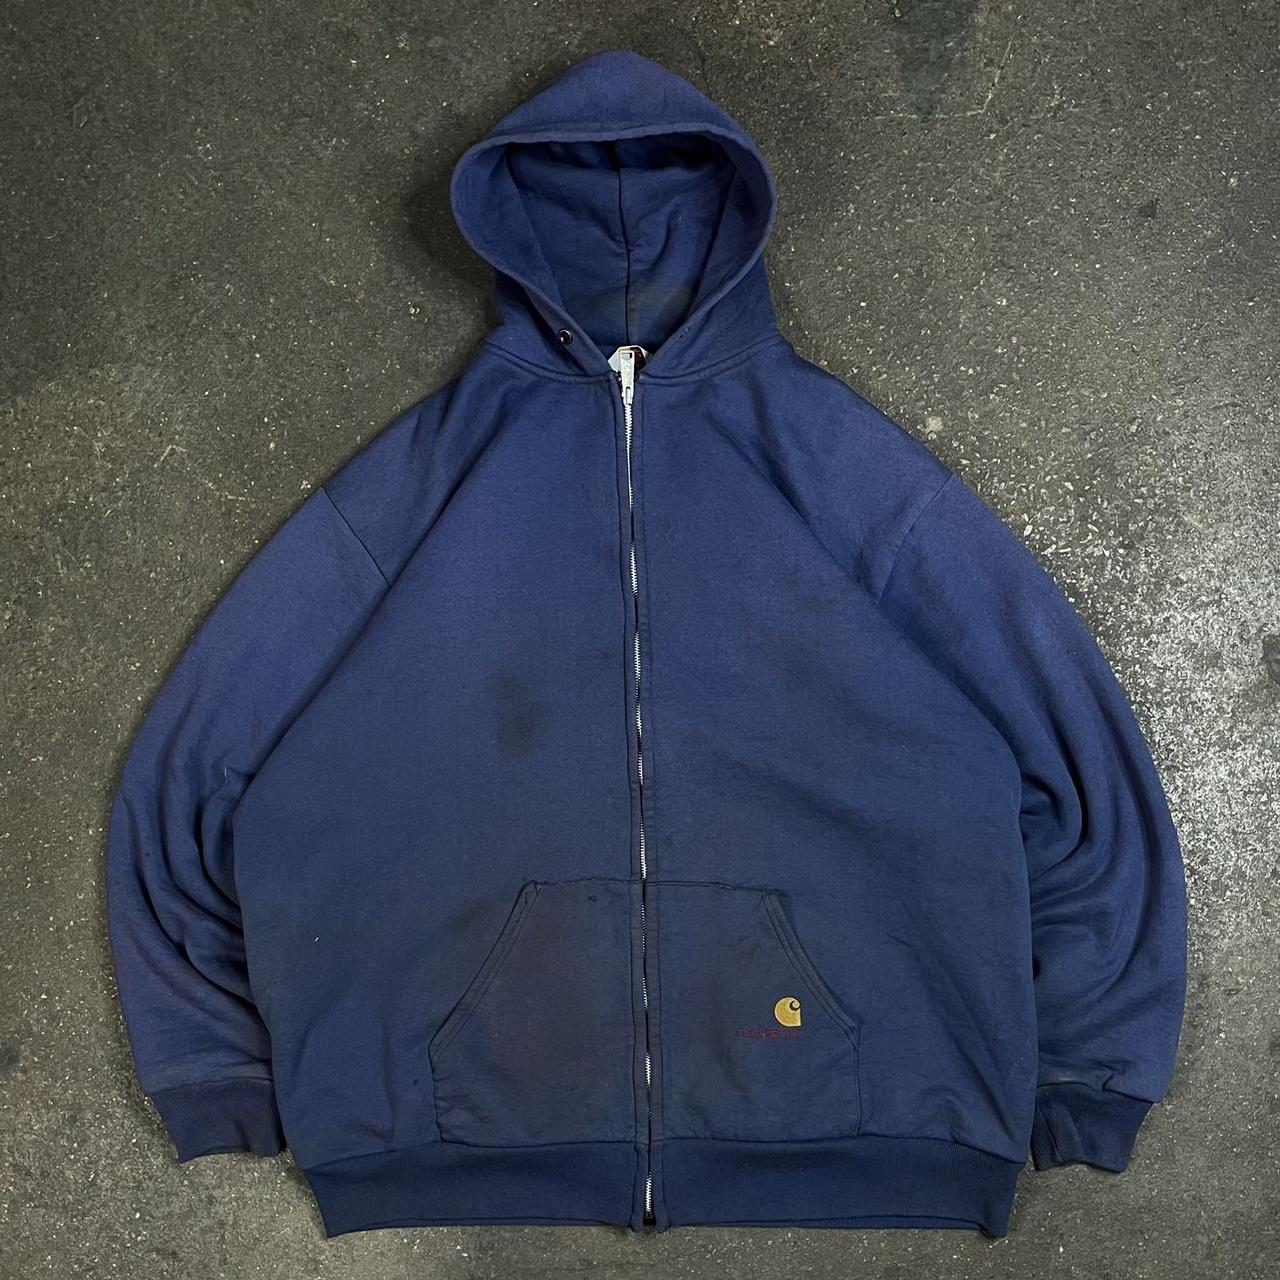 Vintage Carhartt hoodie blue 90s Carhartt workwear... - Depop